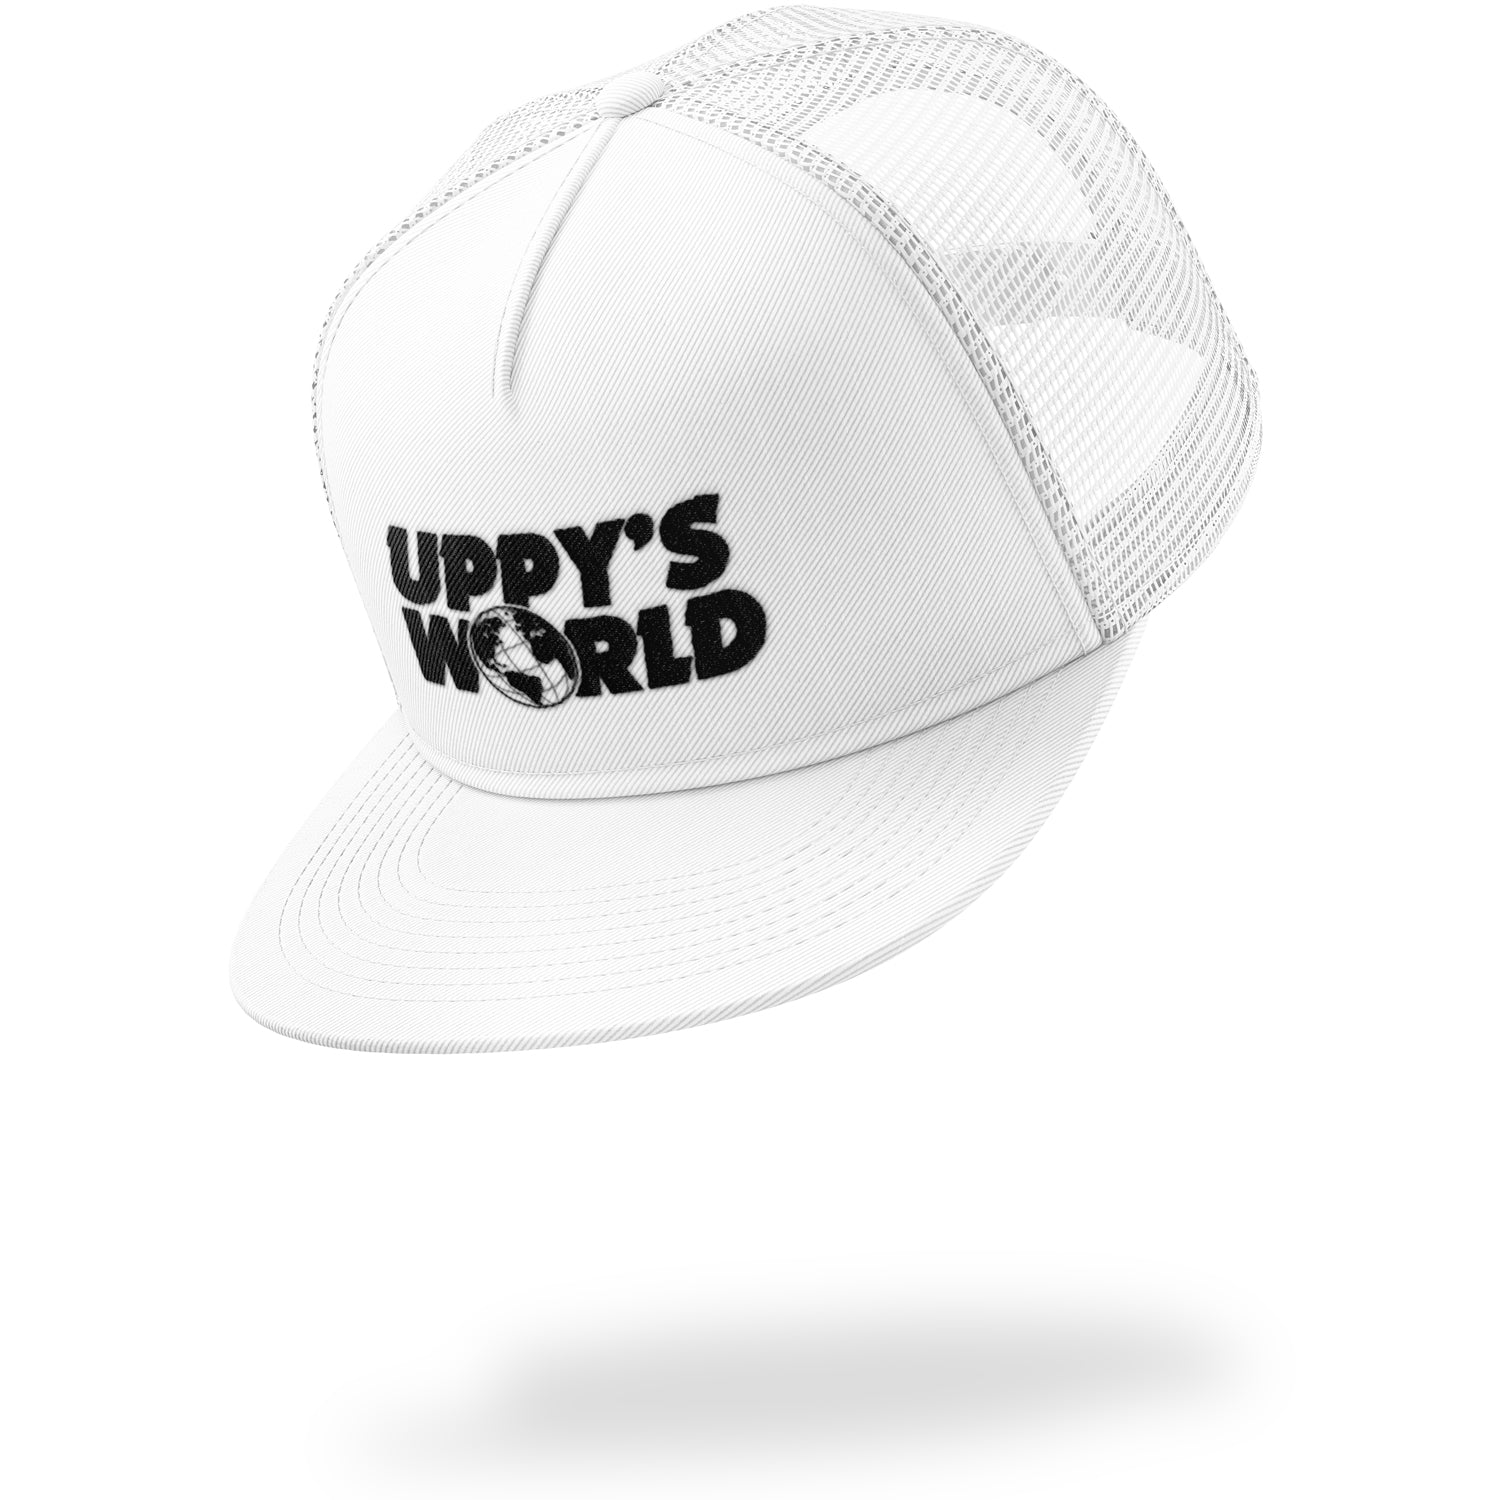 UPPY'S WORLD - WHITE